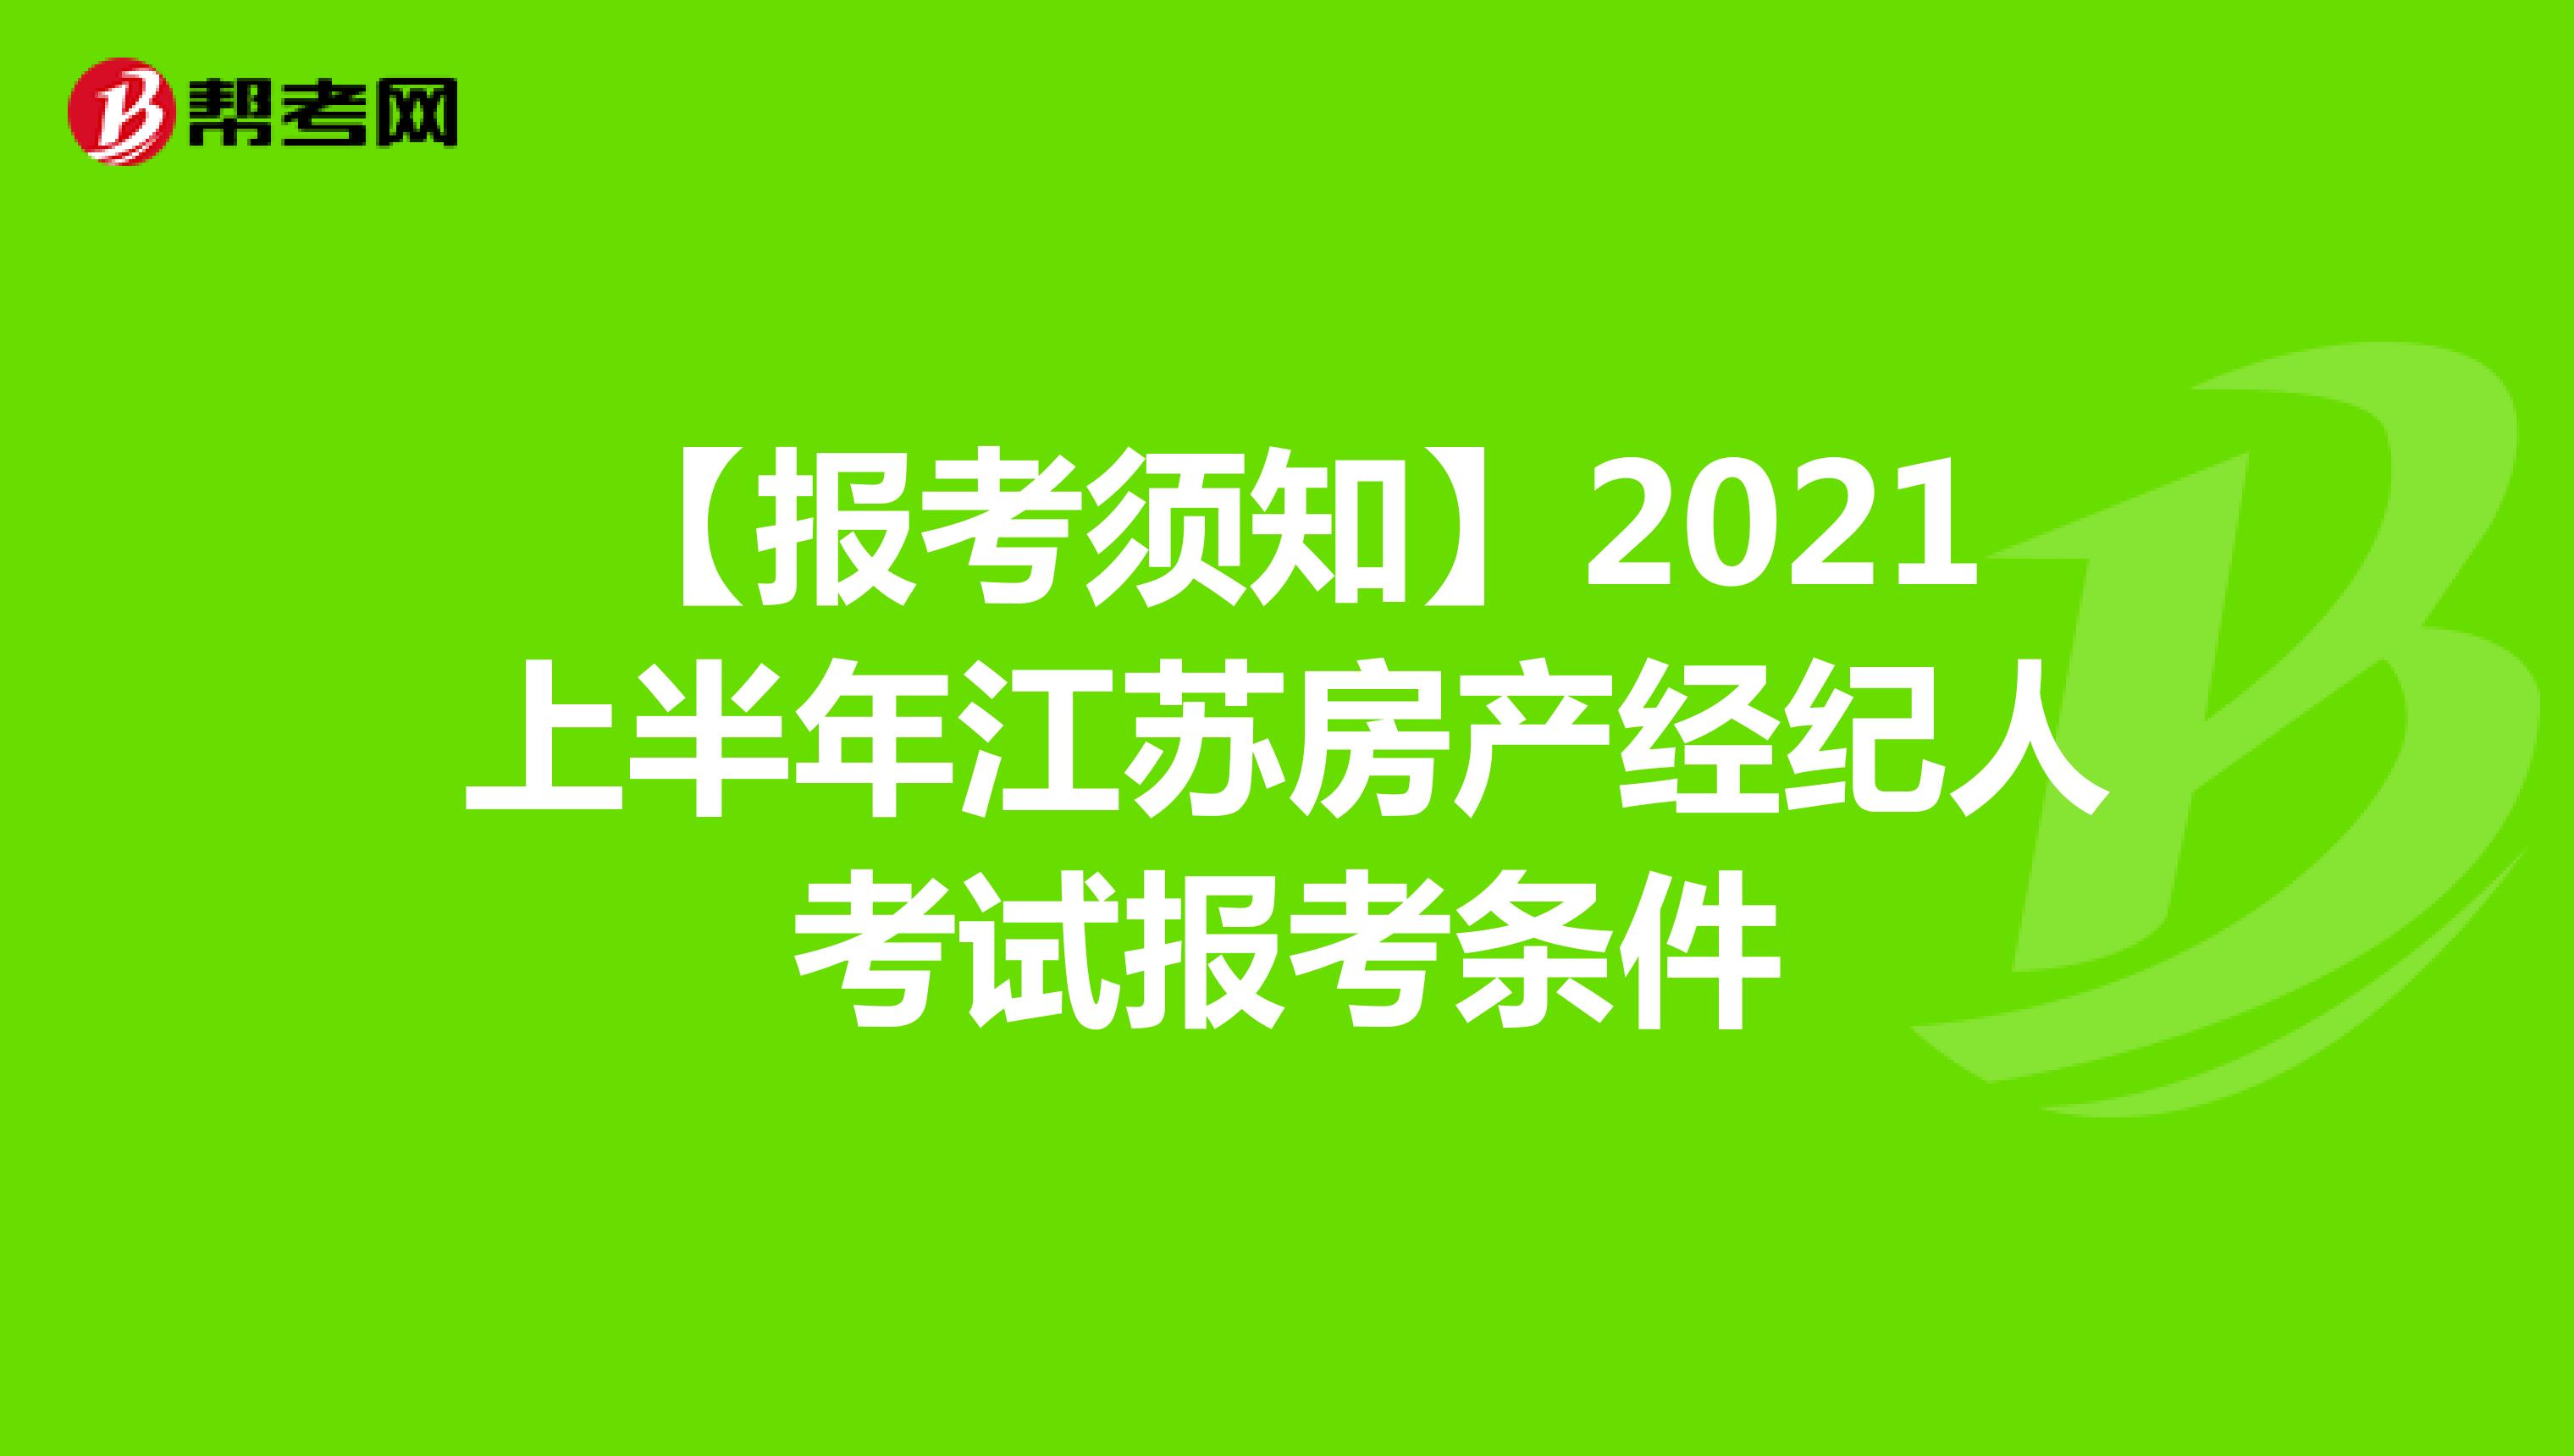 【报考须知】2021上半年江苏房产经纪人考试报考条件